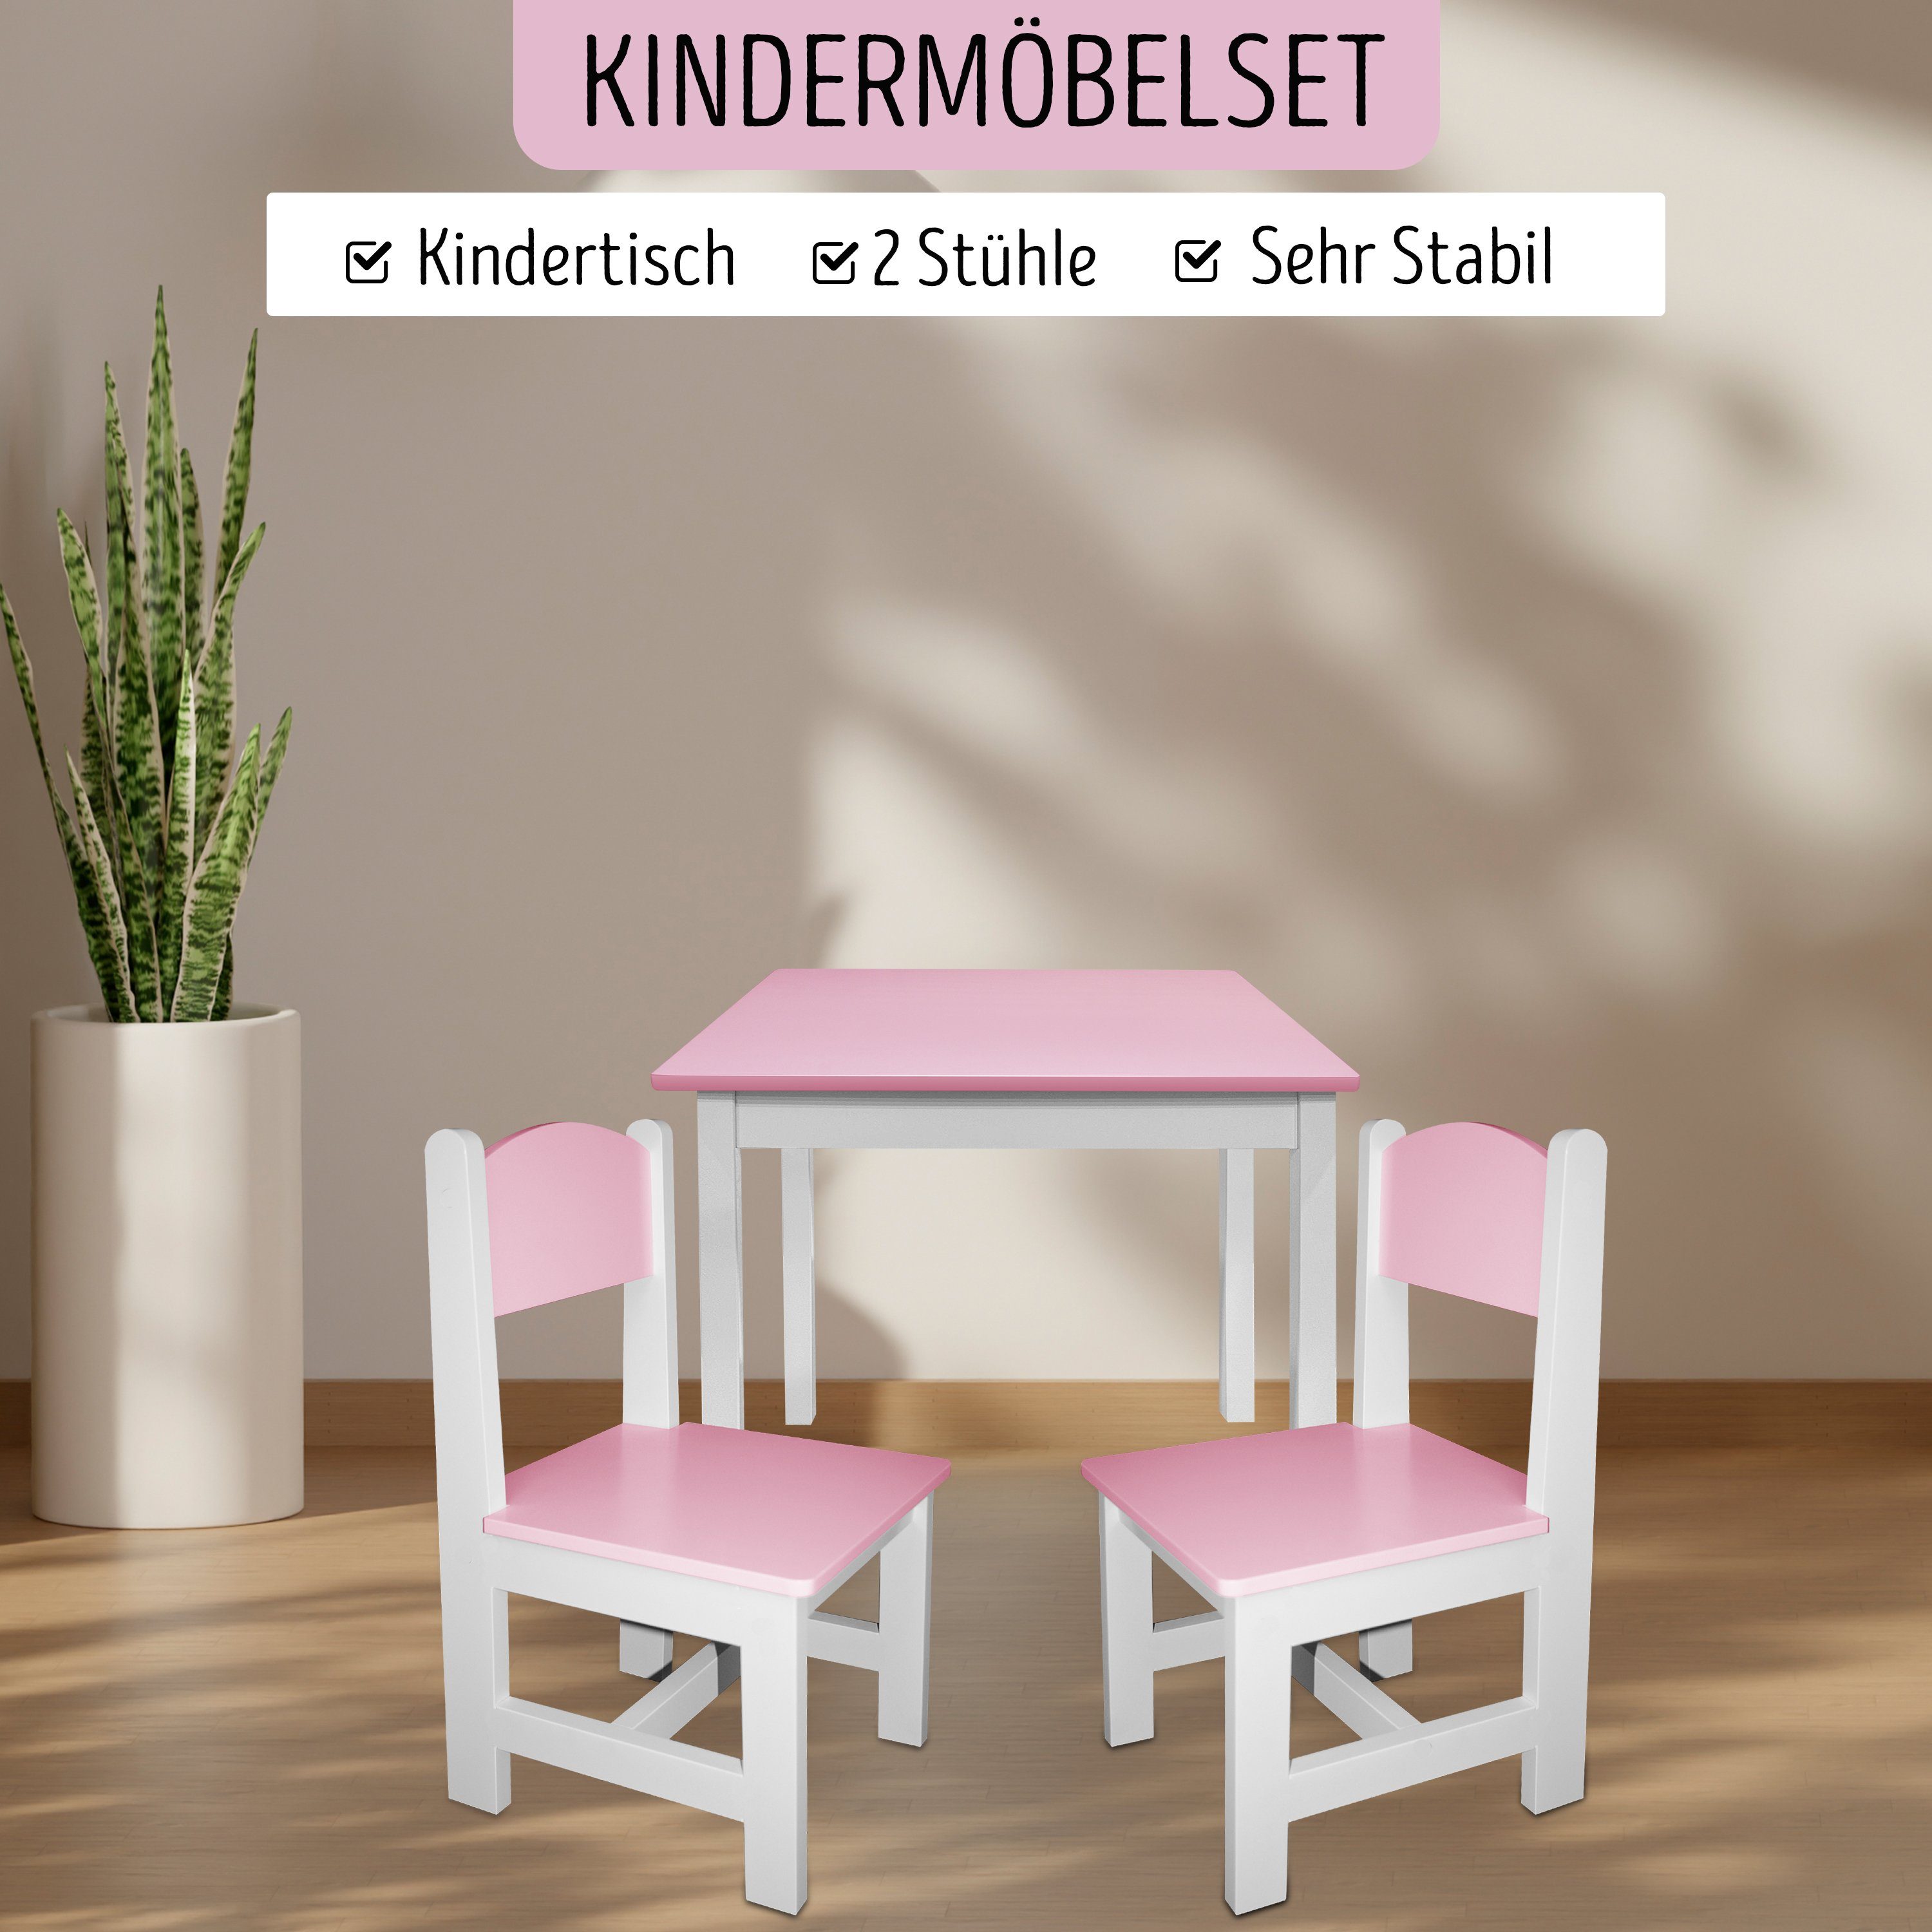 & Kindertisch Stühle Kindermöbelset 2 habeig Hocker Rosa+Weiß Maltisch Kindersitzgruppe 60x50x50cm